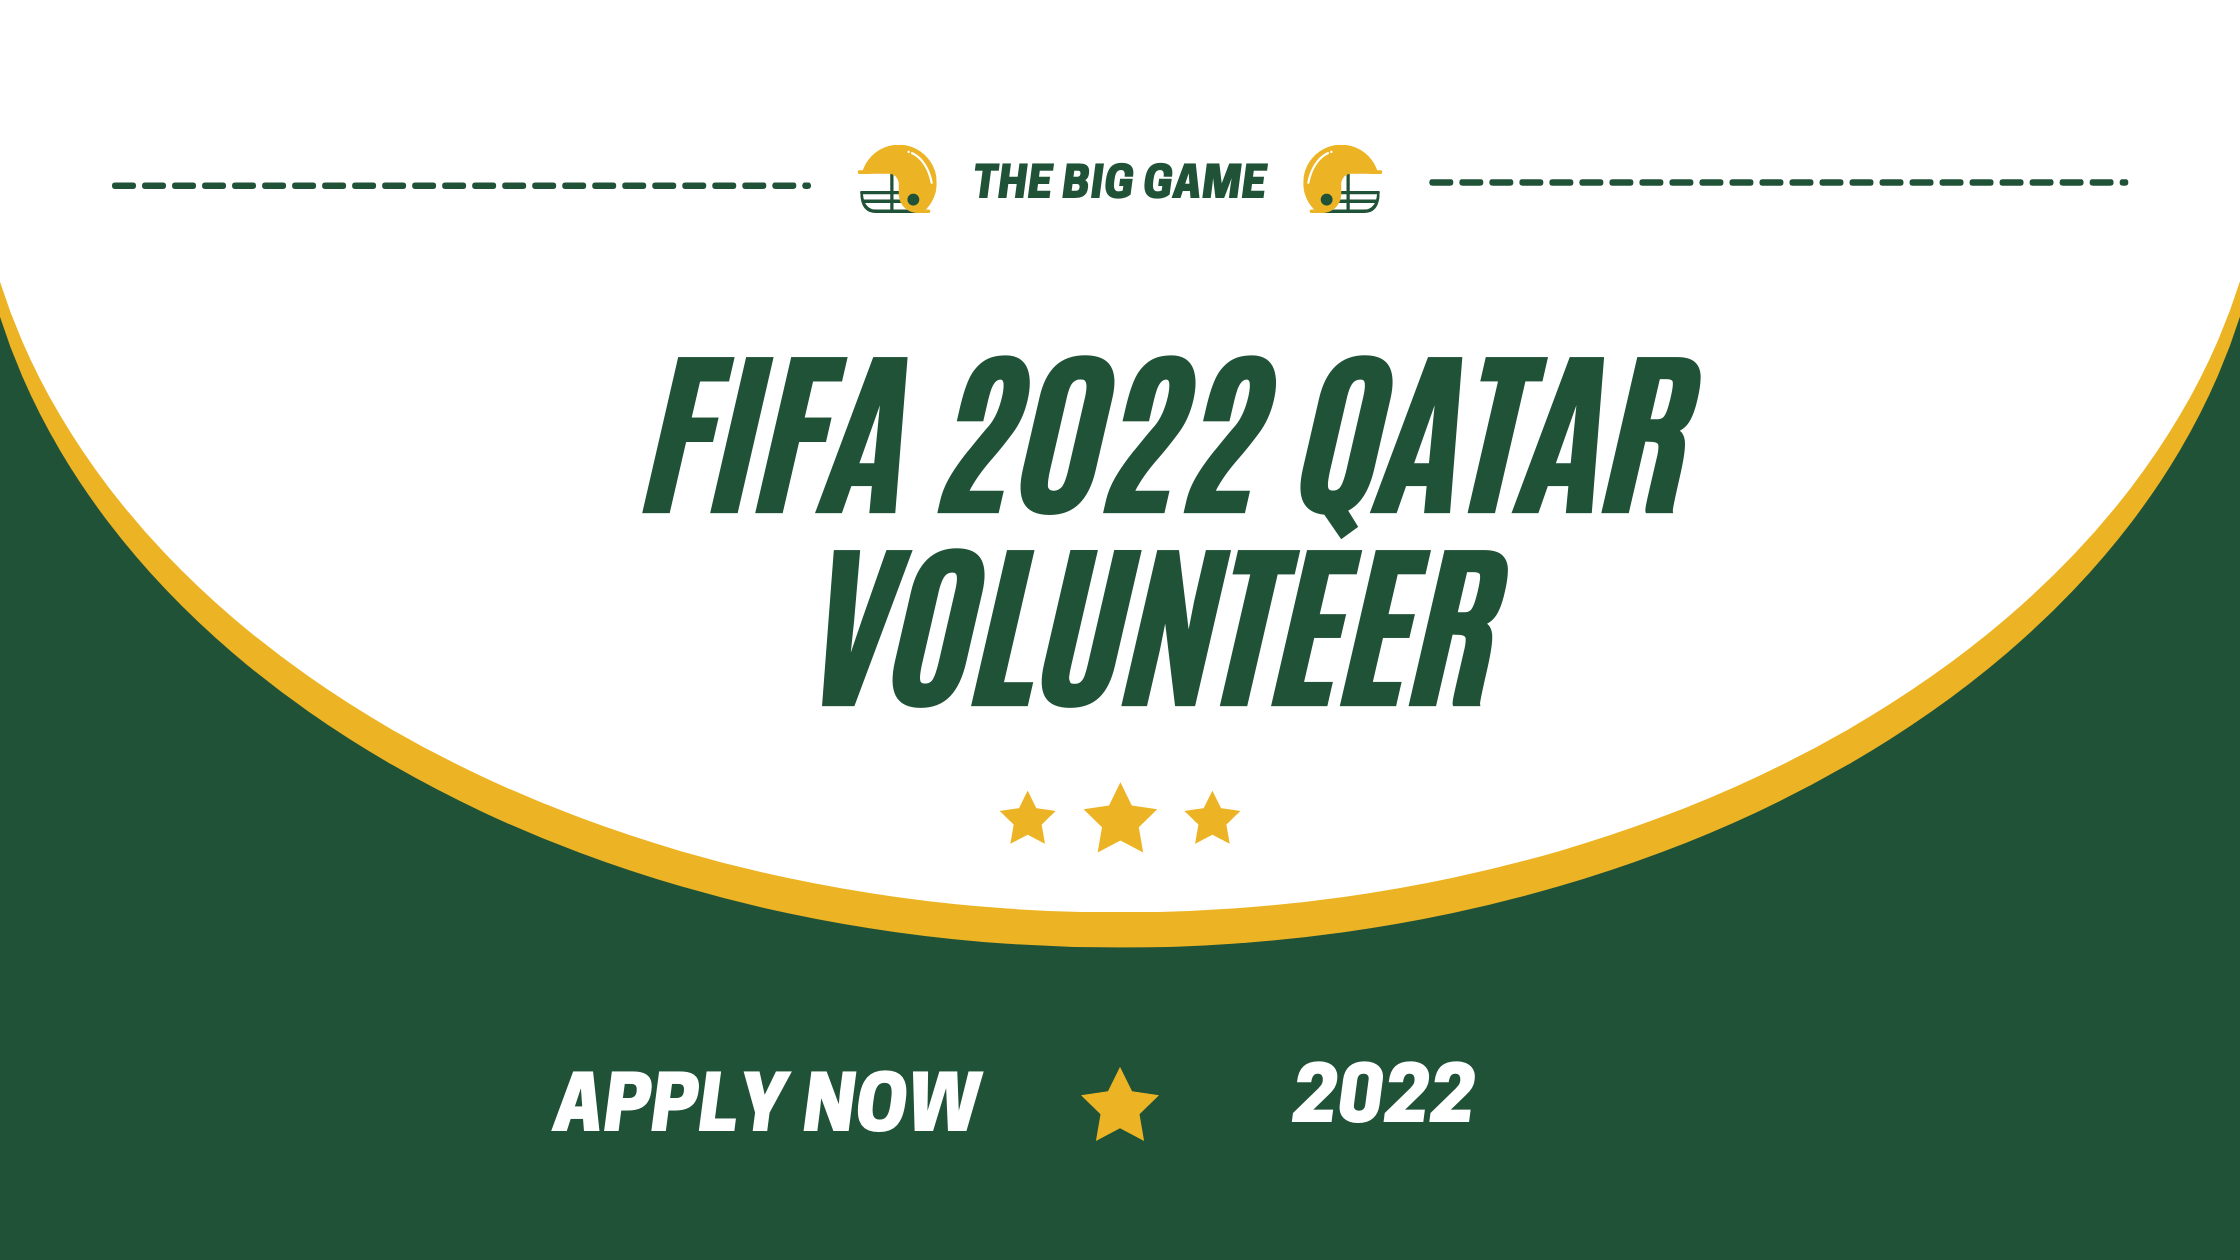 fifa 2022 qatar volunteer 2022| apply now